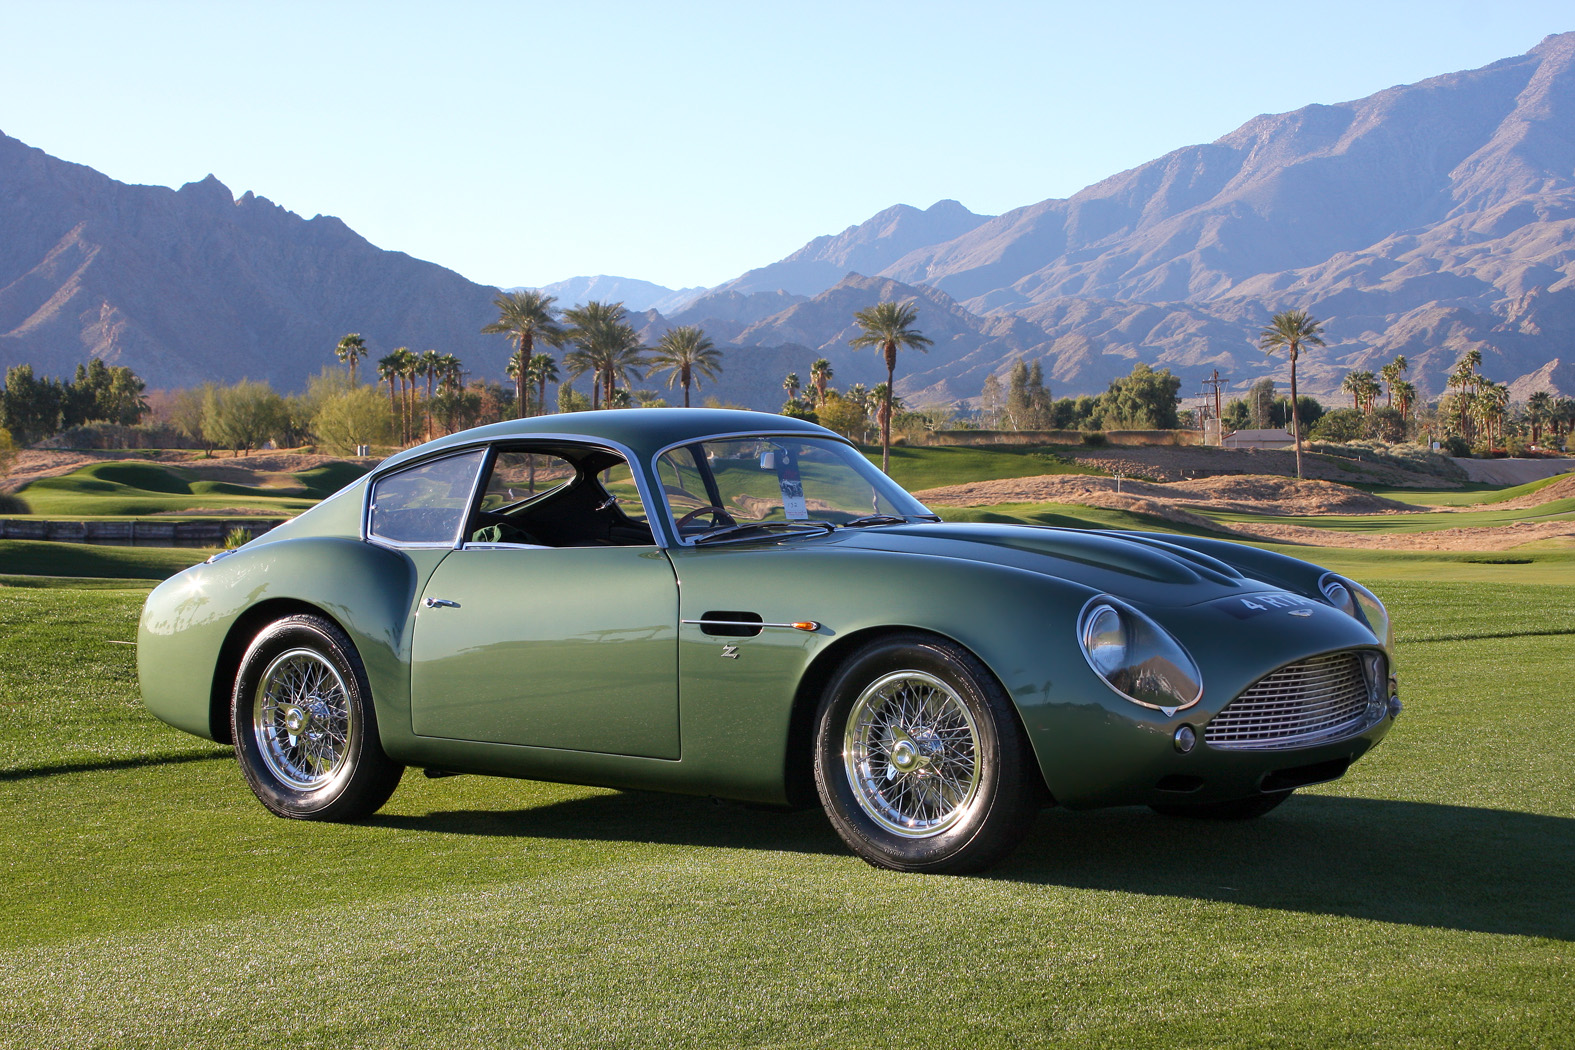 
The 1963 Aston Martin DB4 GT Zagato